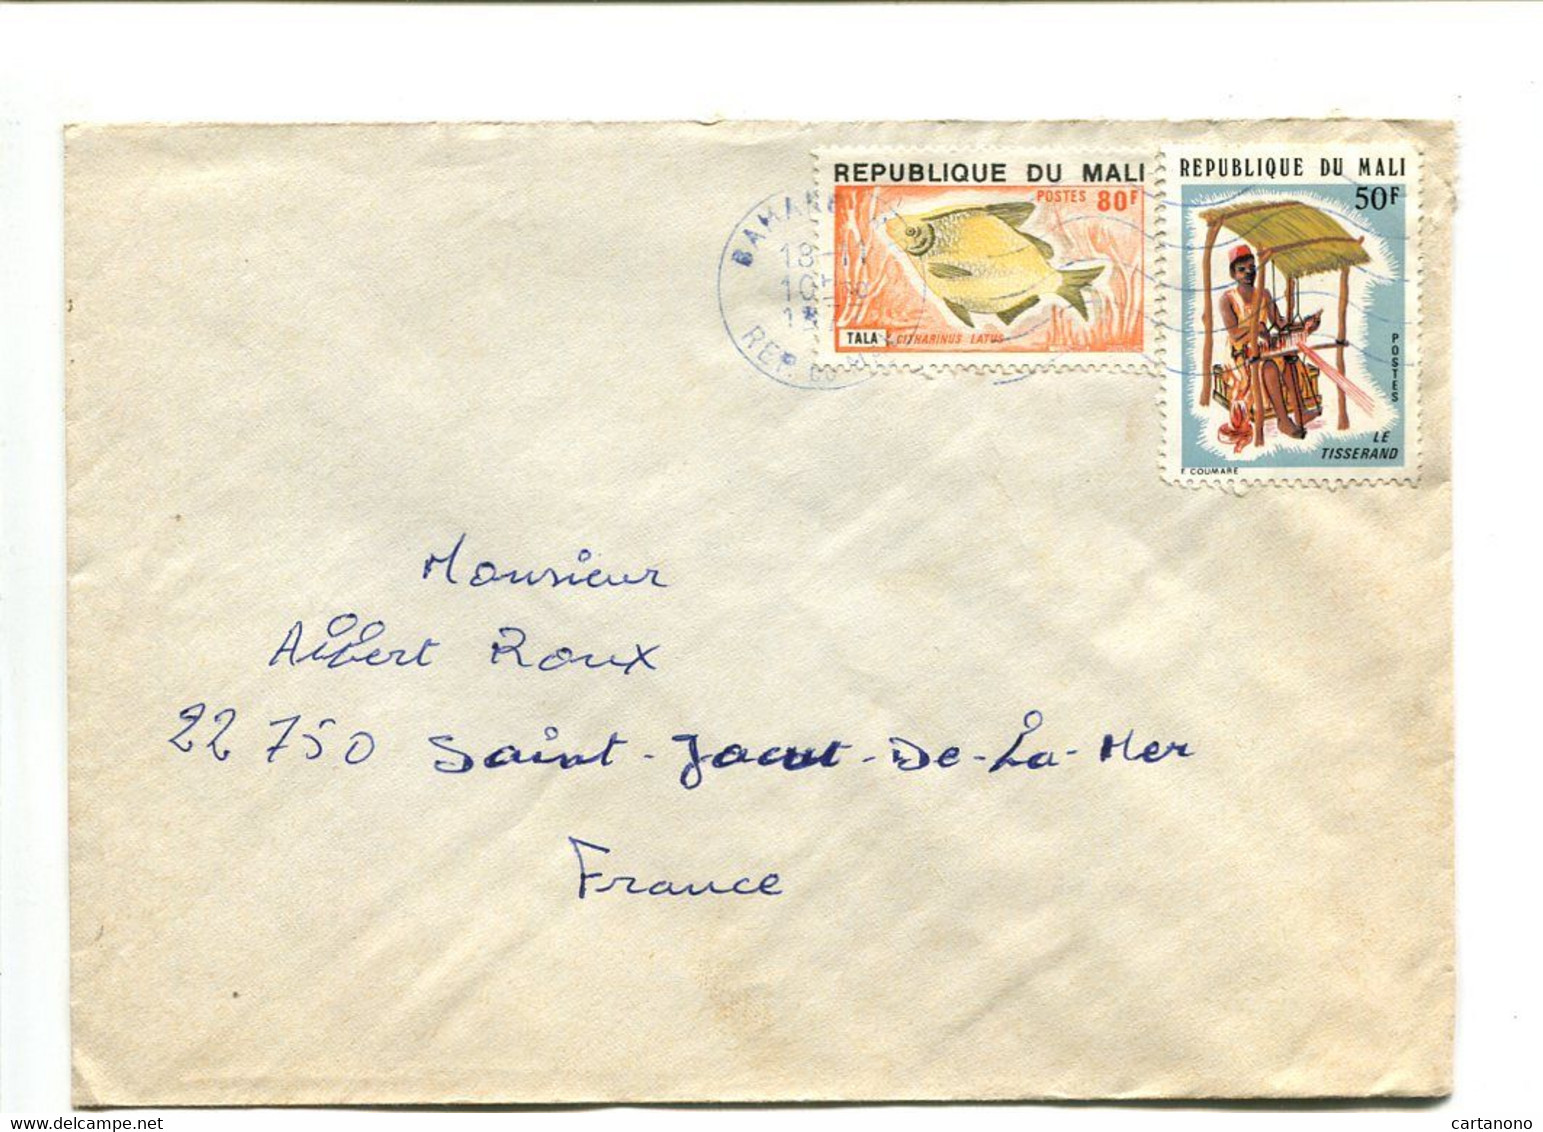 MALI 1977 - Affranchissement Seul Sur Lettre  - Poisson / Artisanat - Mali (1959-...)